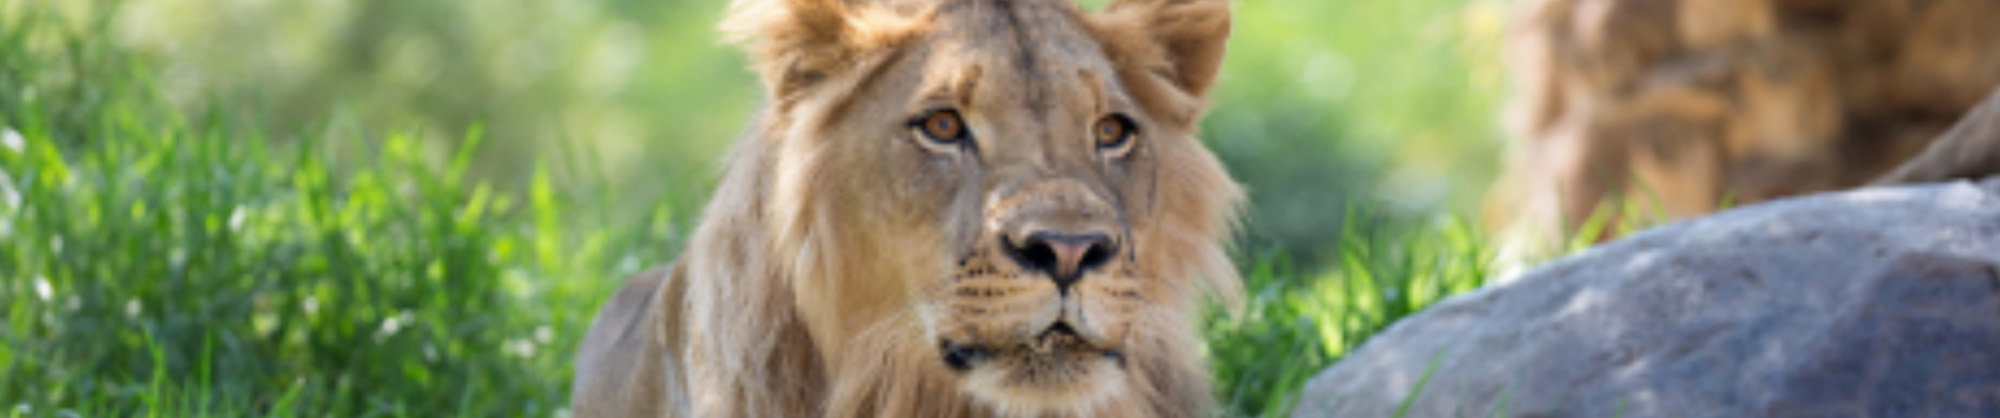 Closeup photo of a lion 